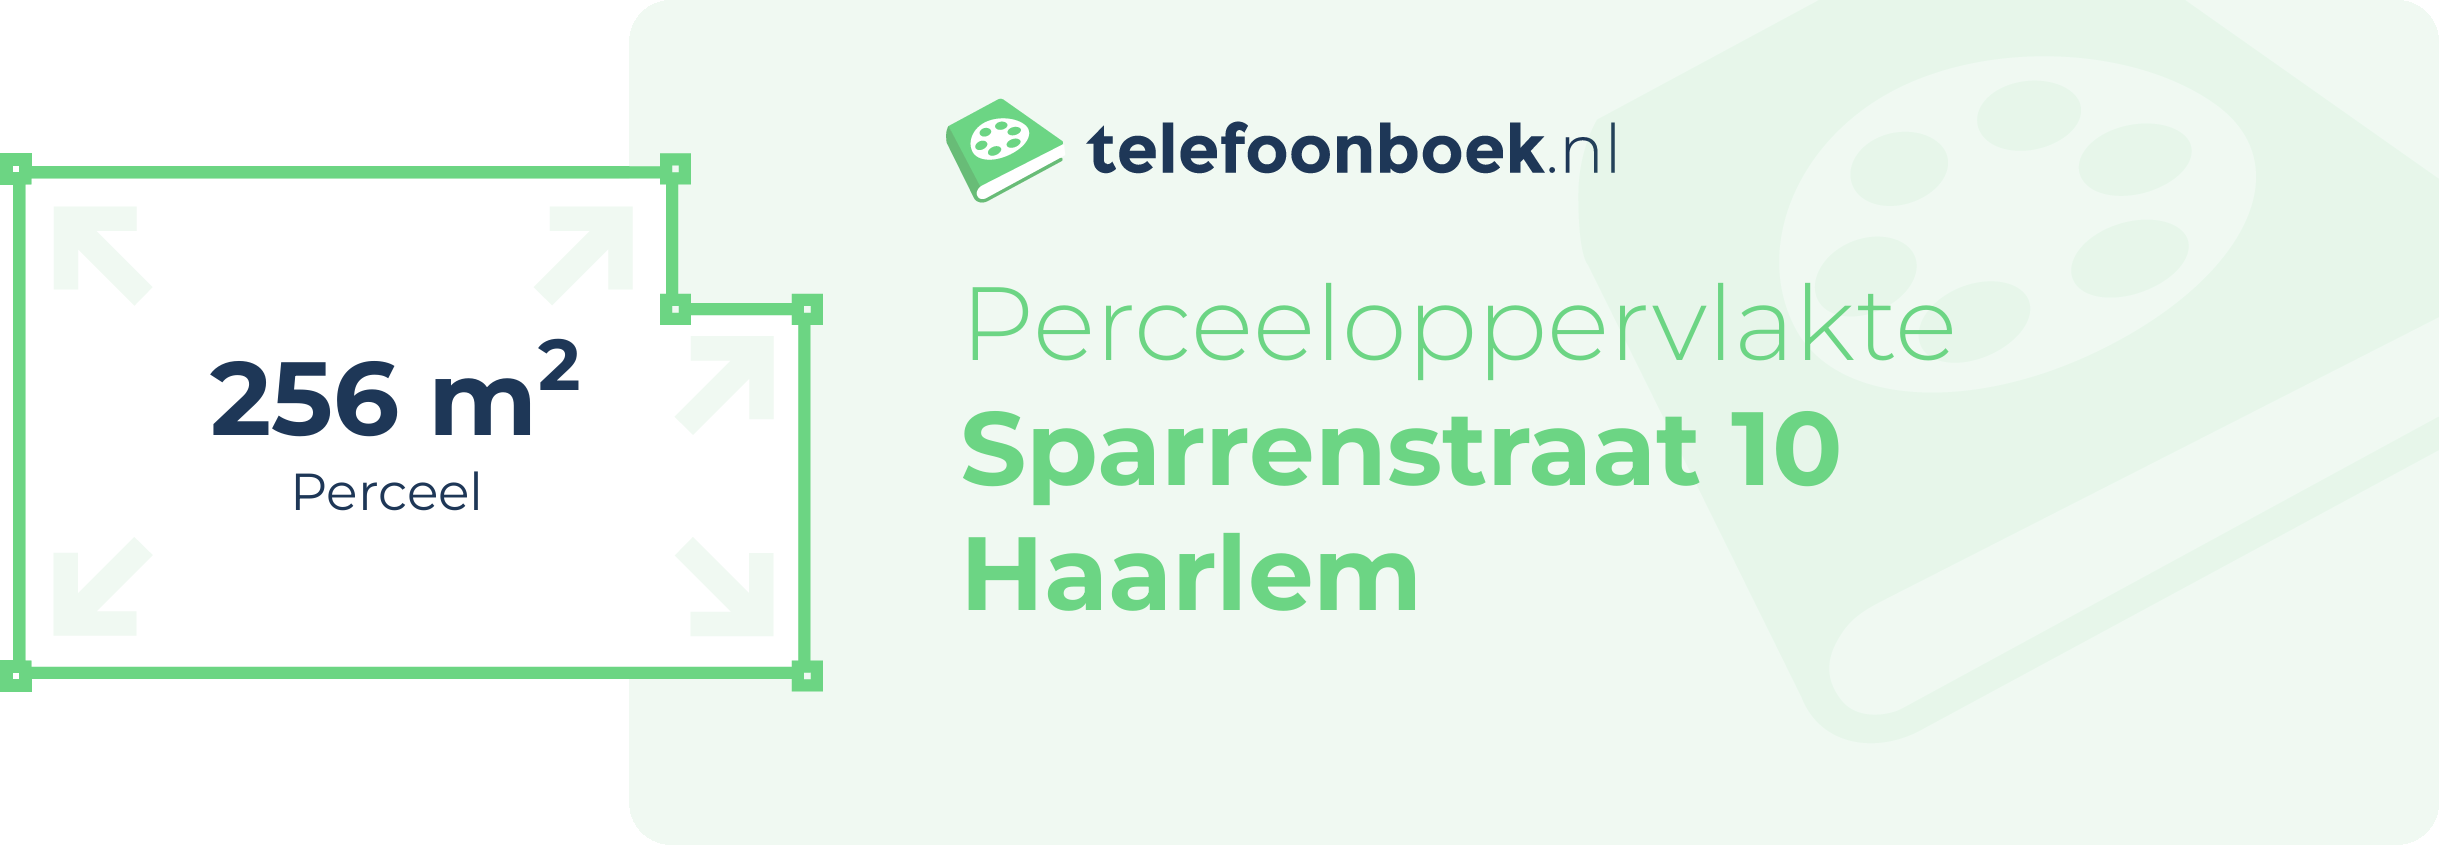 Perceeloppervlakte Sparrenstraat 10 Haarlem